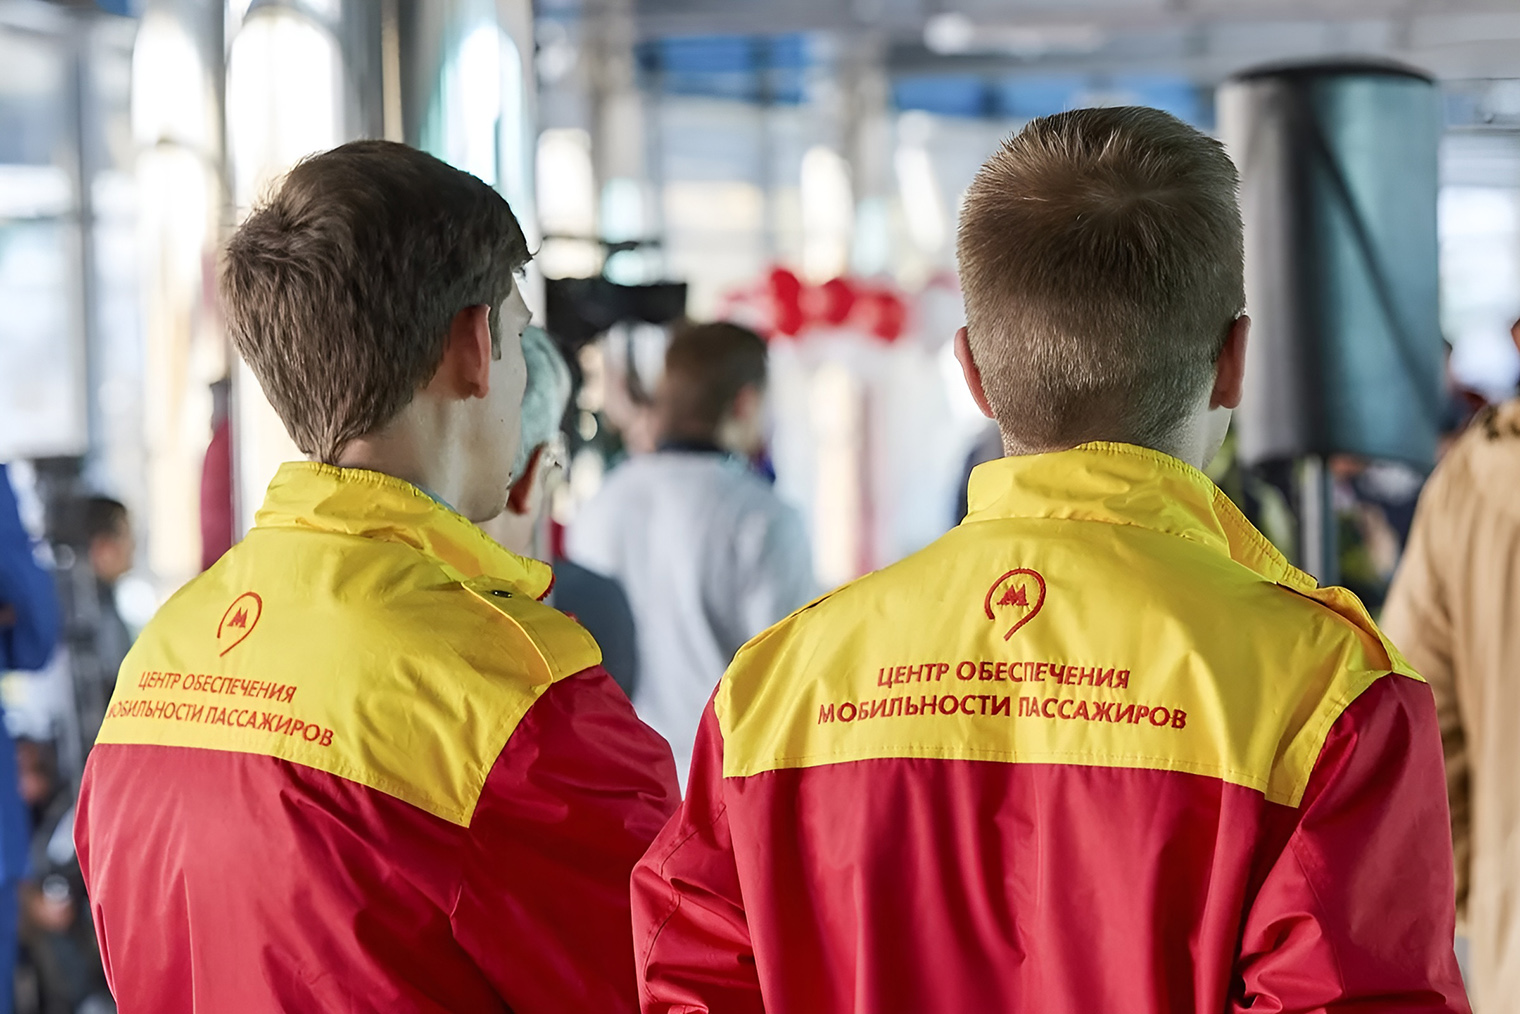 В московском метро пожилым помогут сотрудники в красно-желтой форме. Источник: mos.ru